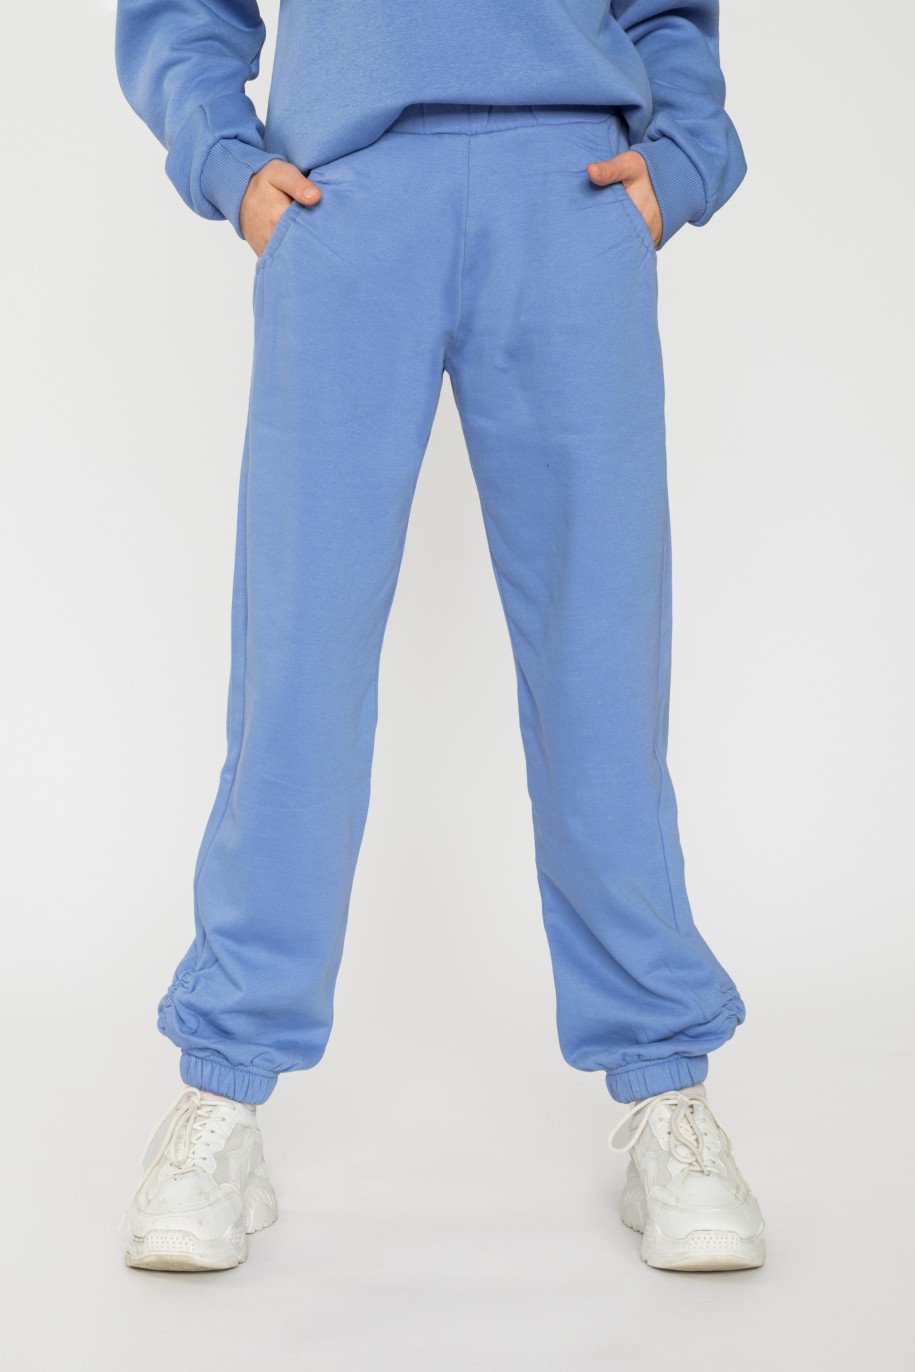 Niebieskie spodnie dresowe dla dziewczyny ze ściągaczami - 31815